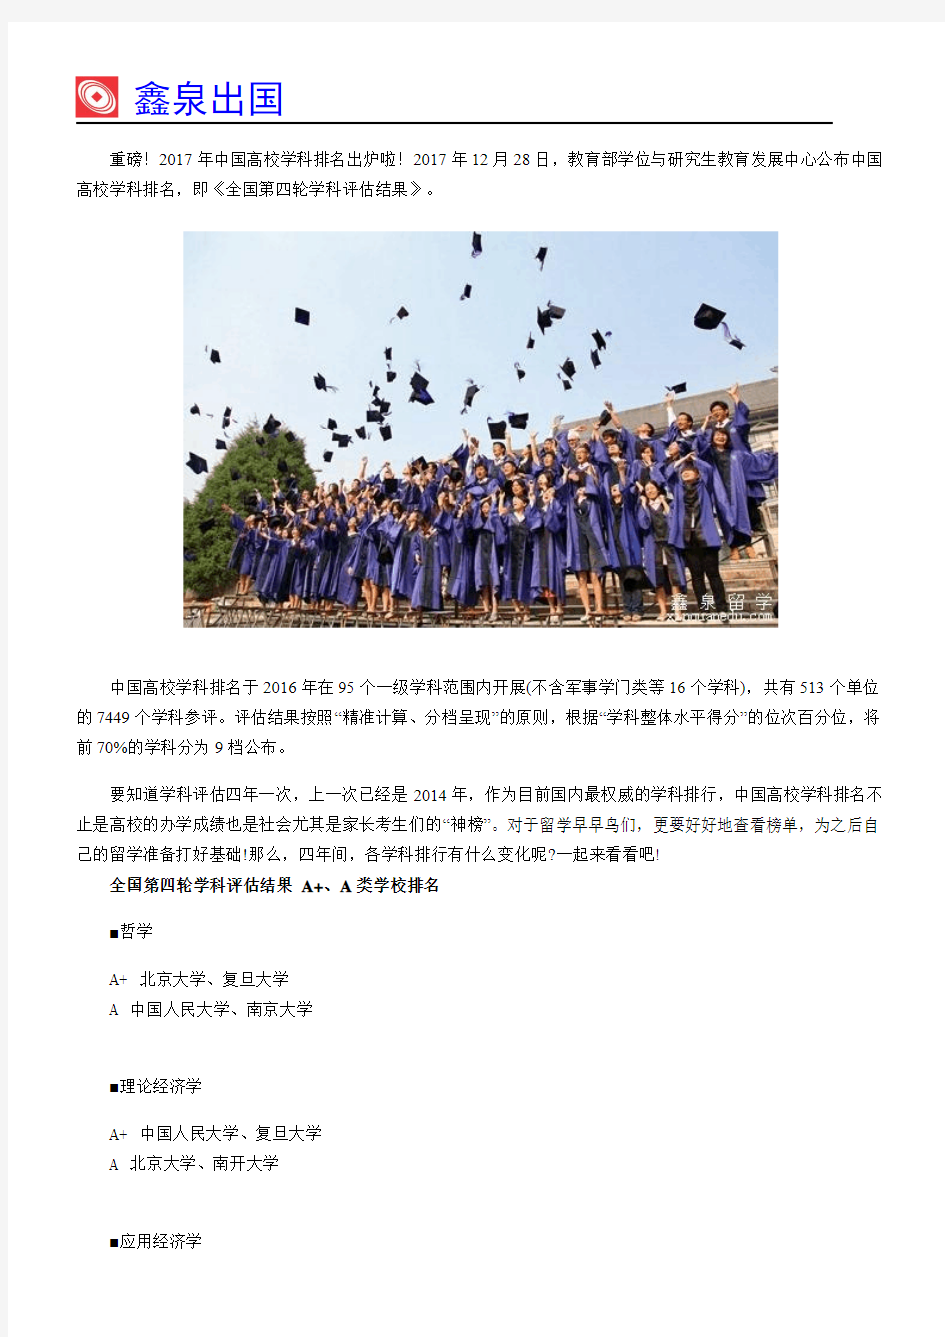 重磅!2017年中国高校学科排名出炉